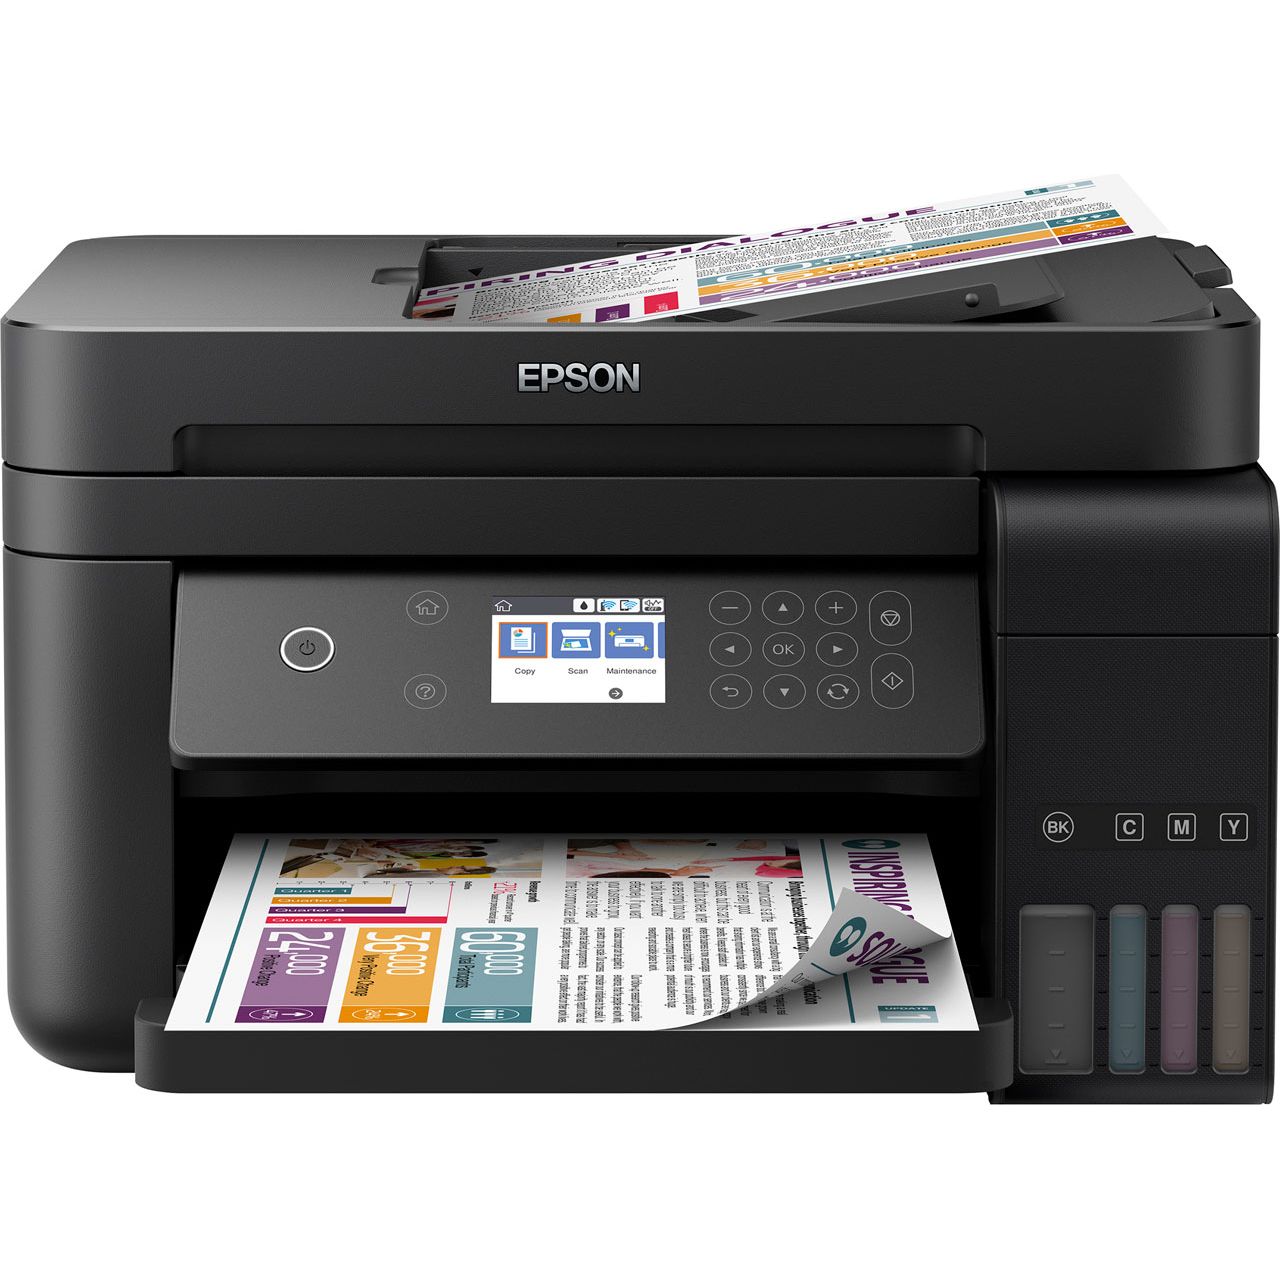 Epson EcoTank ET-3750 Inkjet Printer Review